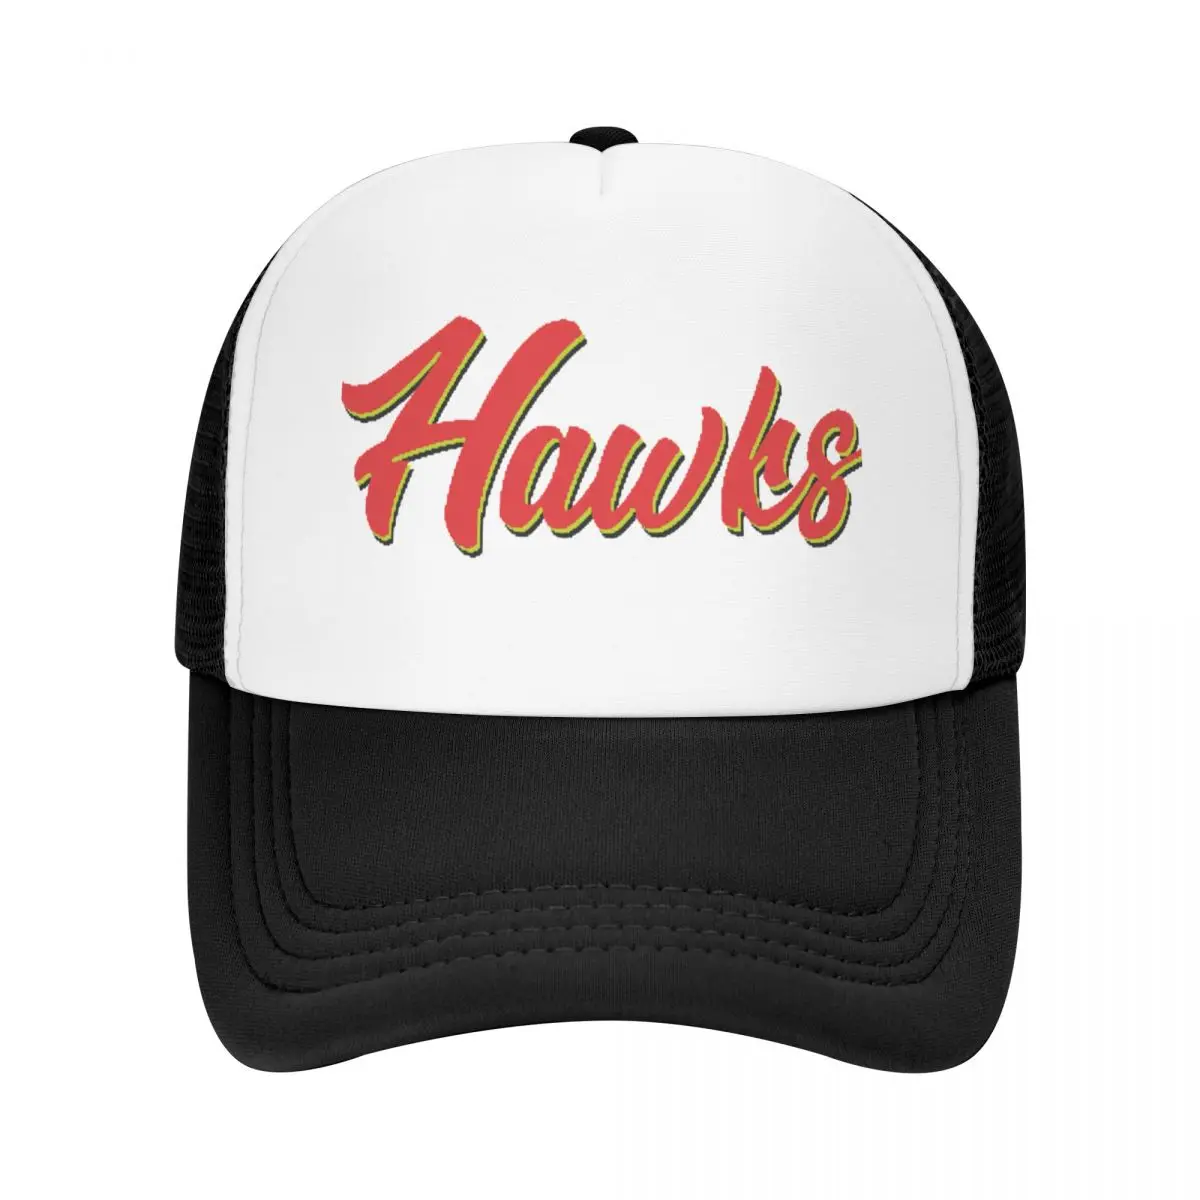 Бейсболка Hawks name, Рождественские шляпы, шляпы в стиле Рейв-вестерн, летние шляпы, мужская одежда для гольфа, женская